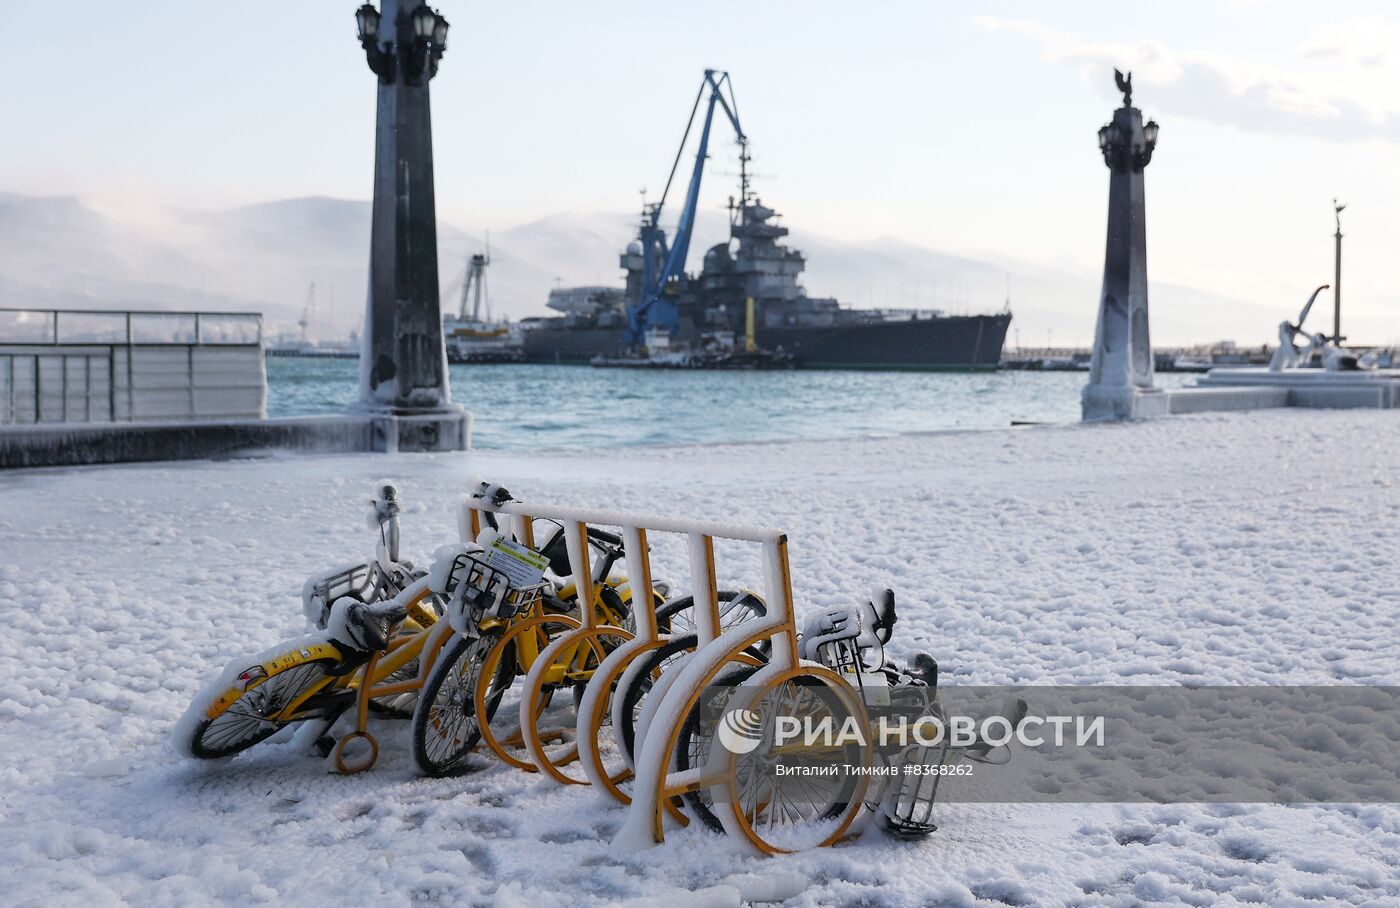 Последствия ледяного дождя в Новороссийске